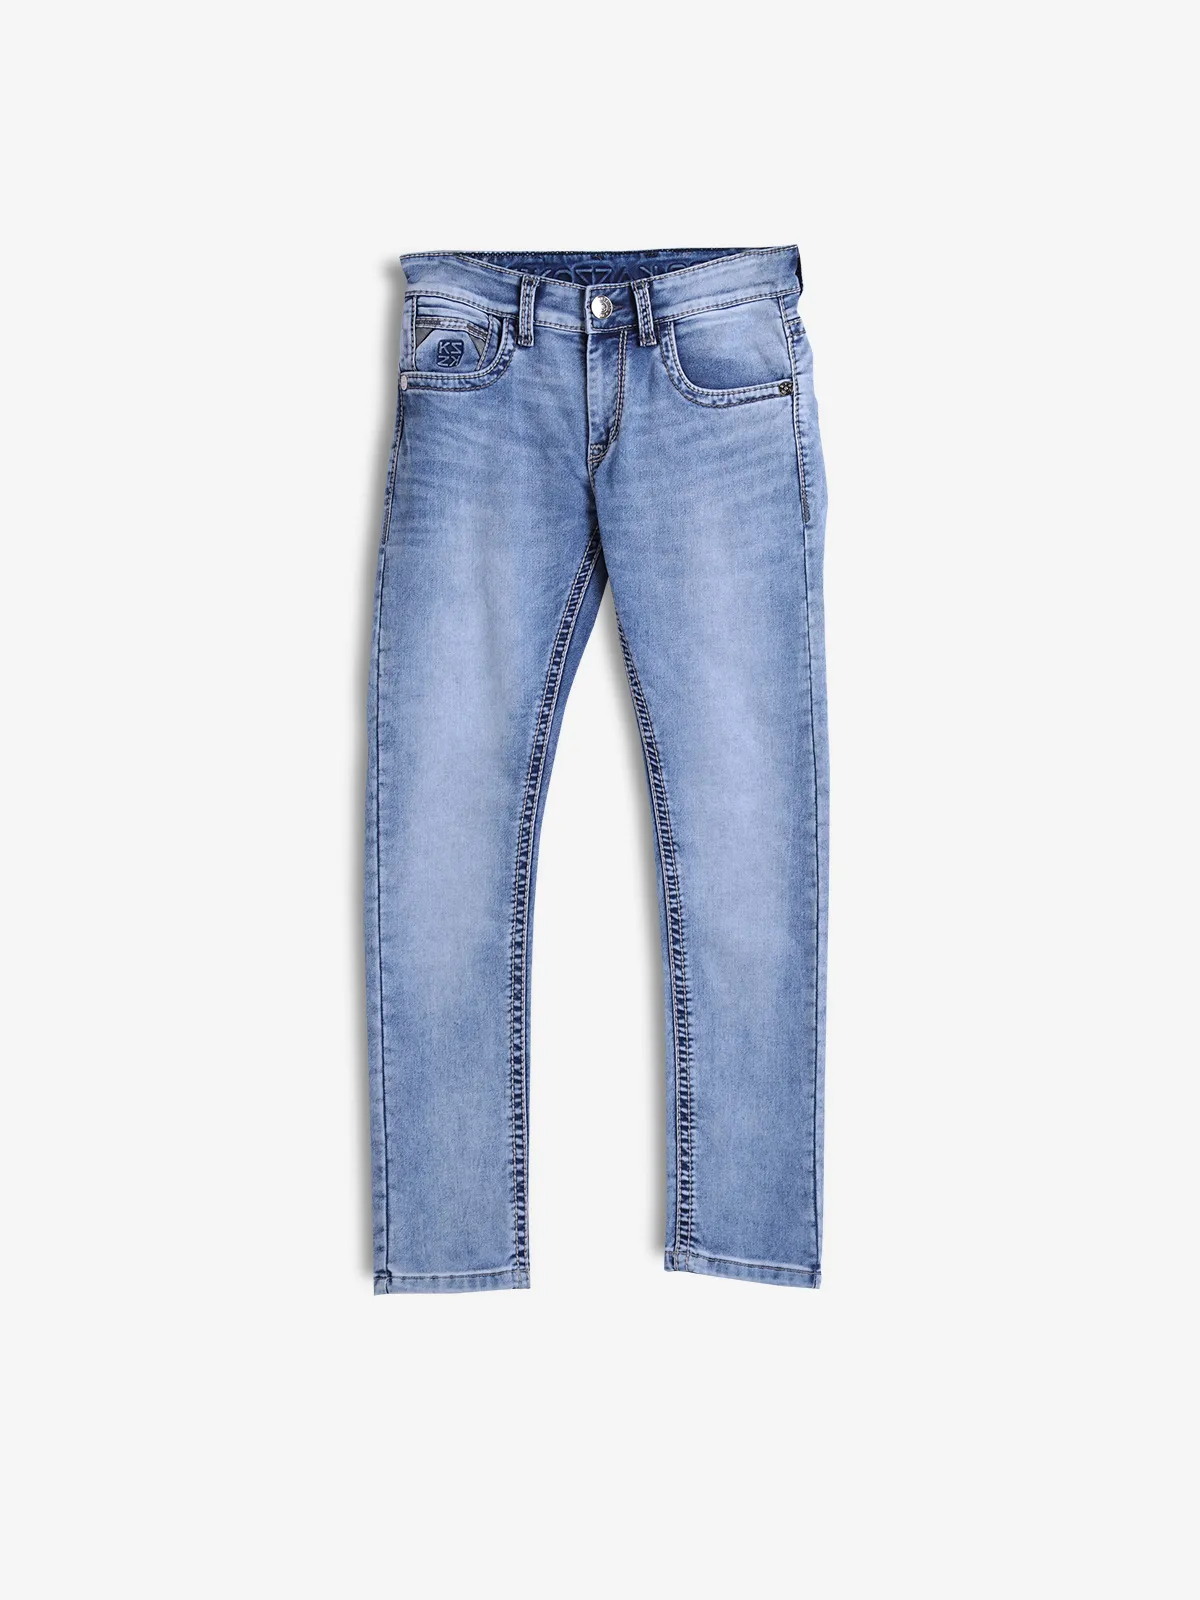 KOZZAK light blue washed super skinny jeans